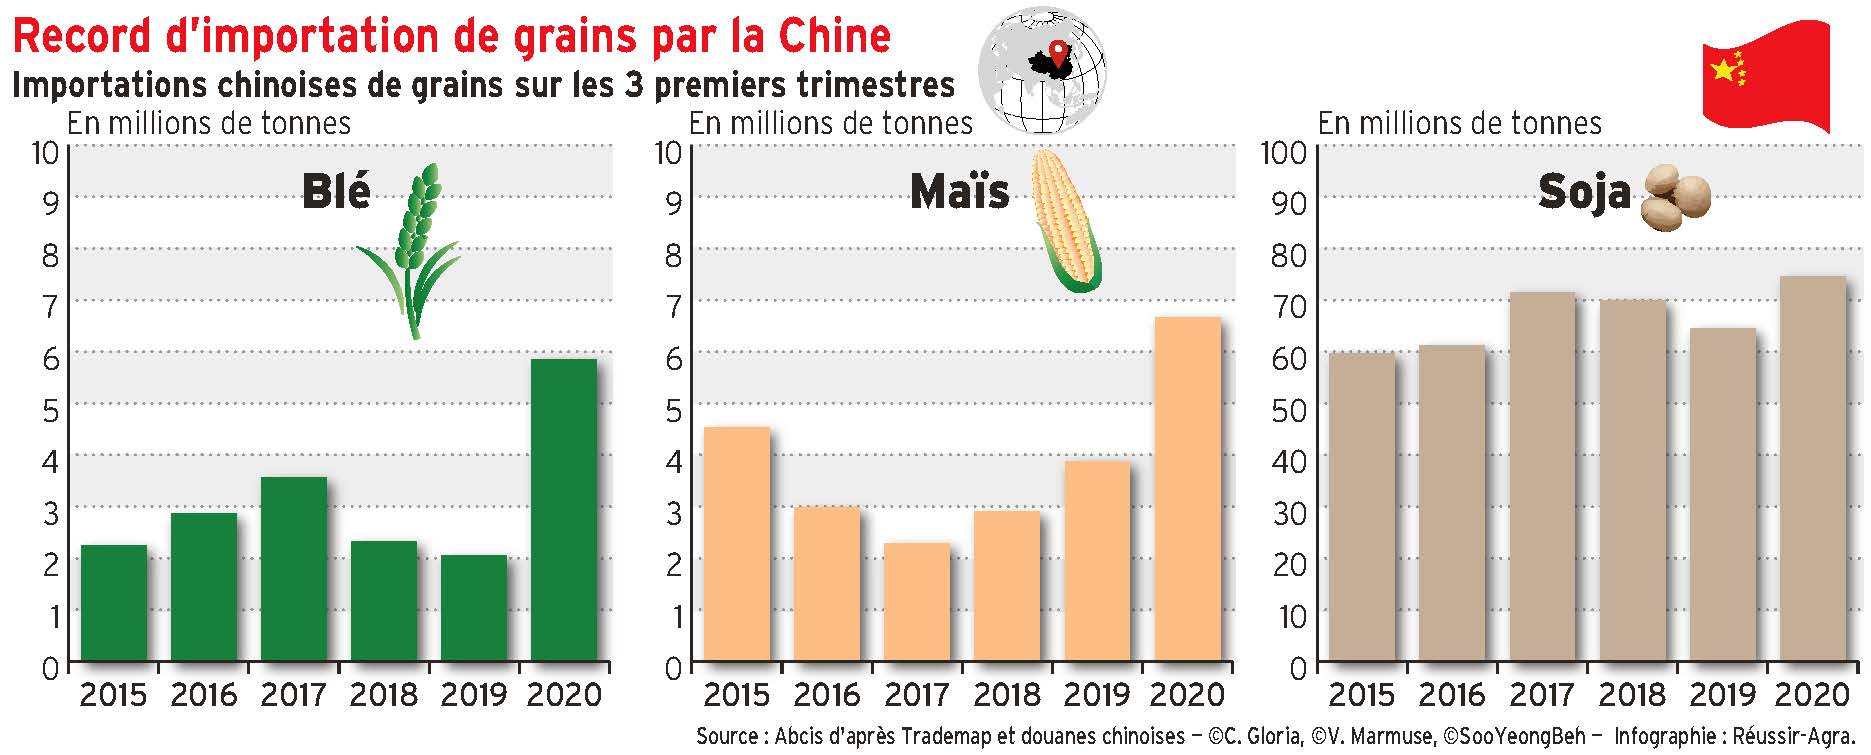 Record d'importation de grains par la Chine